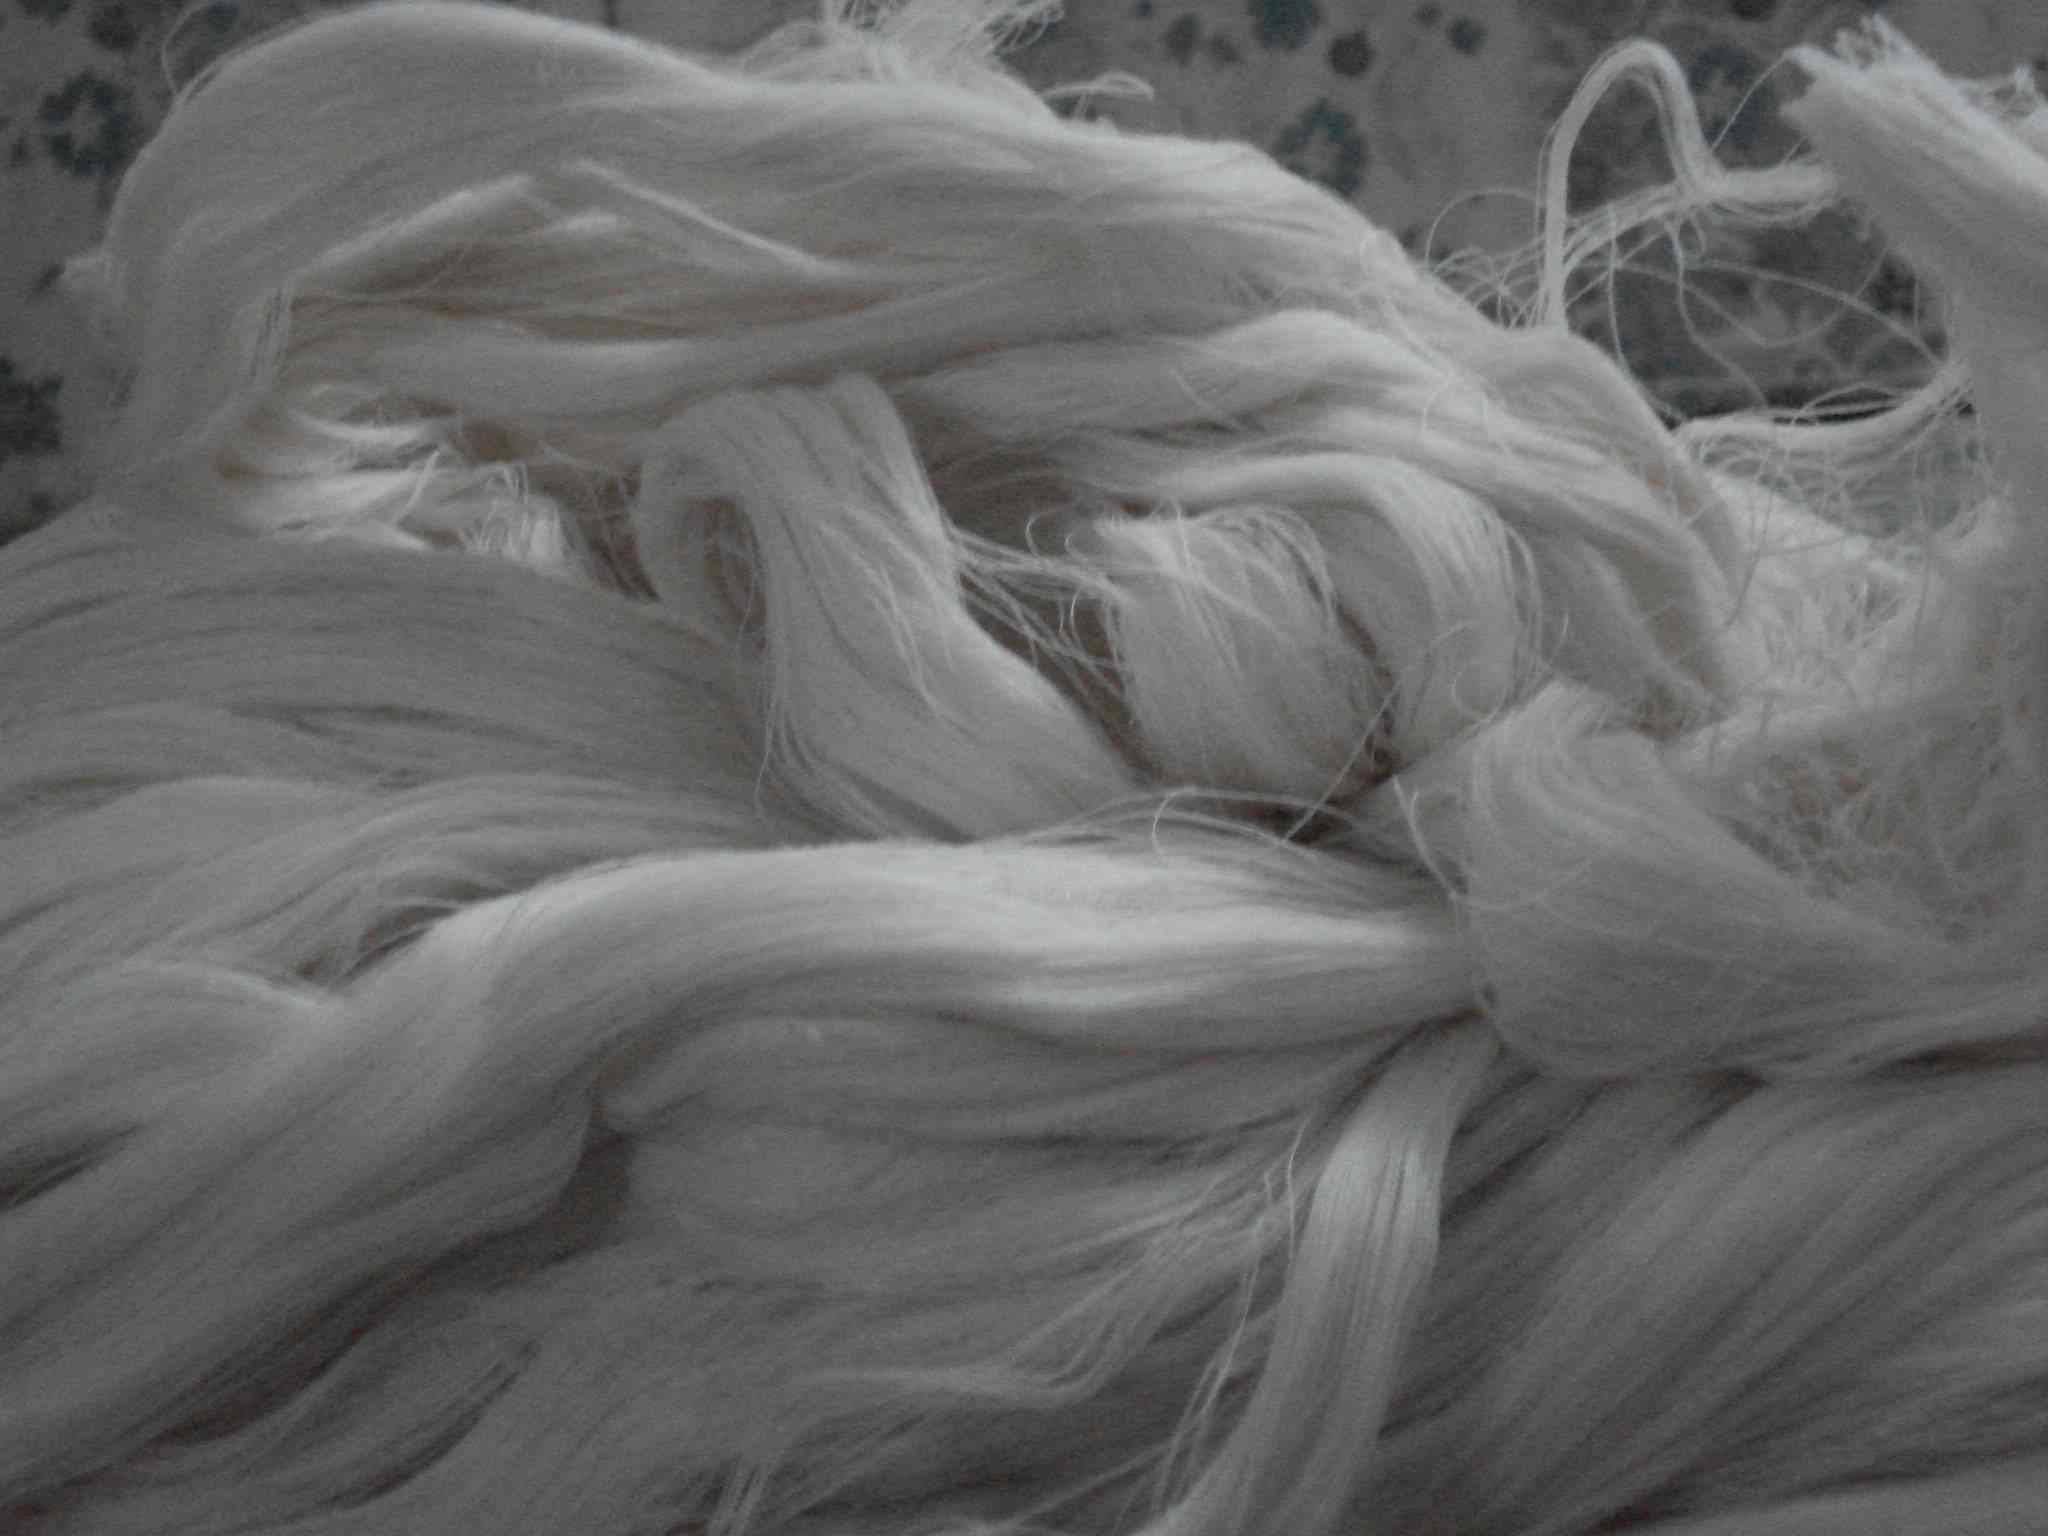  Unbleached 100% Cotton Yarn Waste (Roh 100% Baumwolle Garnabfälle)